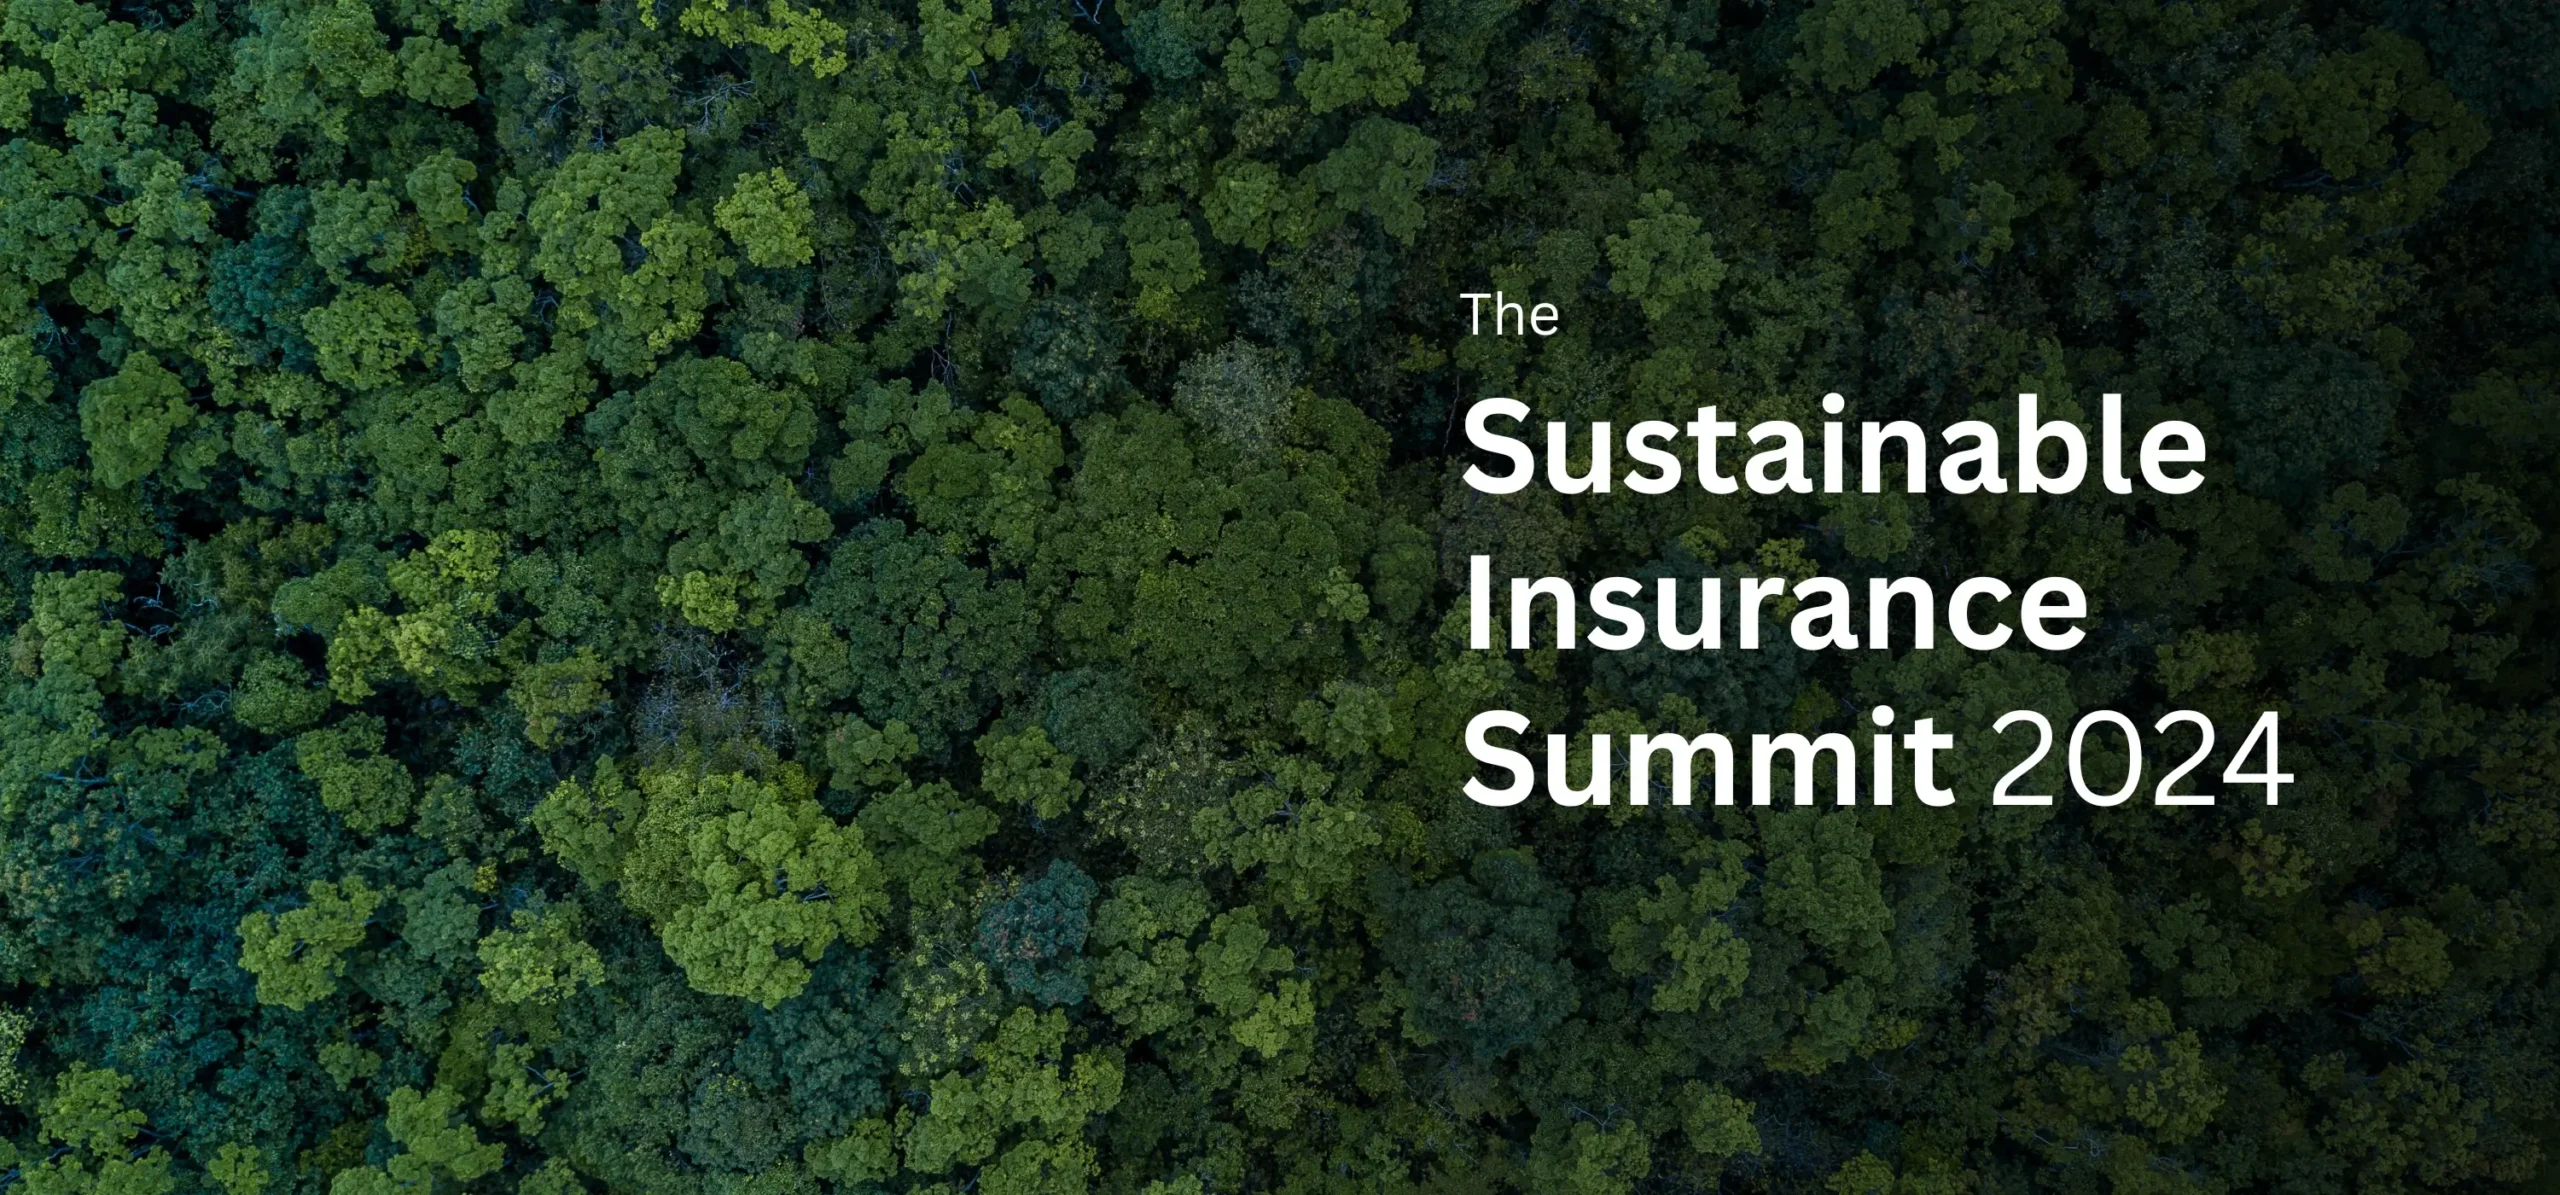 The Sustainable Insurance Summit